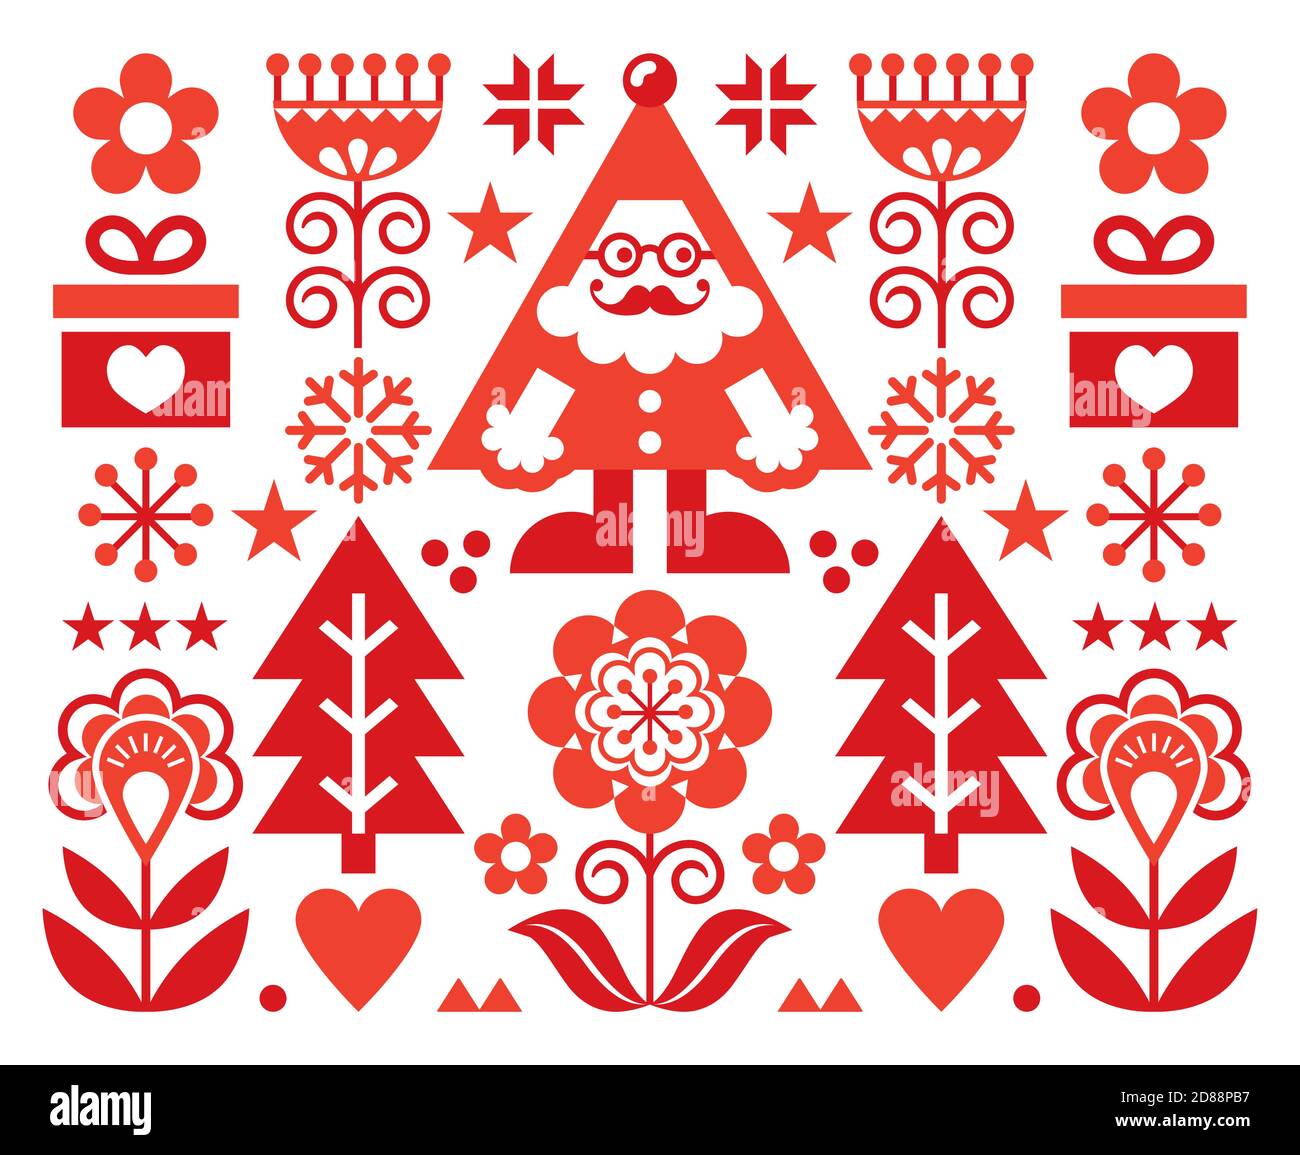 Natale Babbo Natale vettore biglietto di auguri design, scandinavo folk art stile sfondo festoso in rosso su bianco Illustrazione Vettoriale